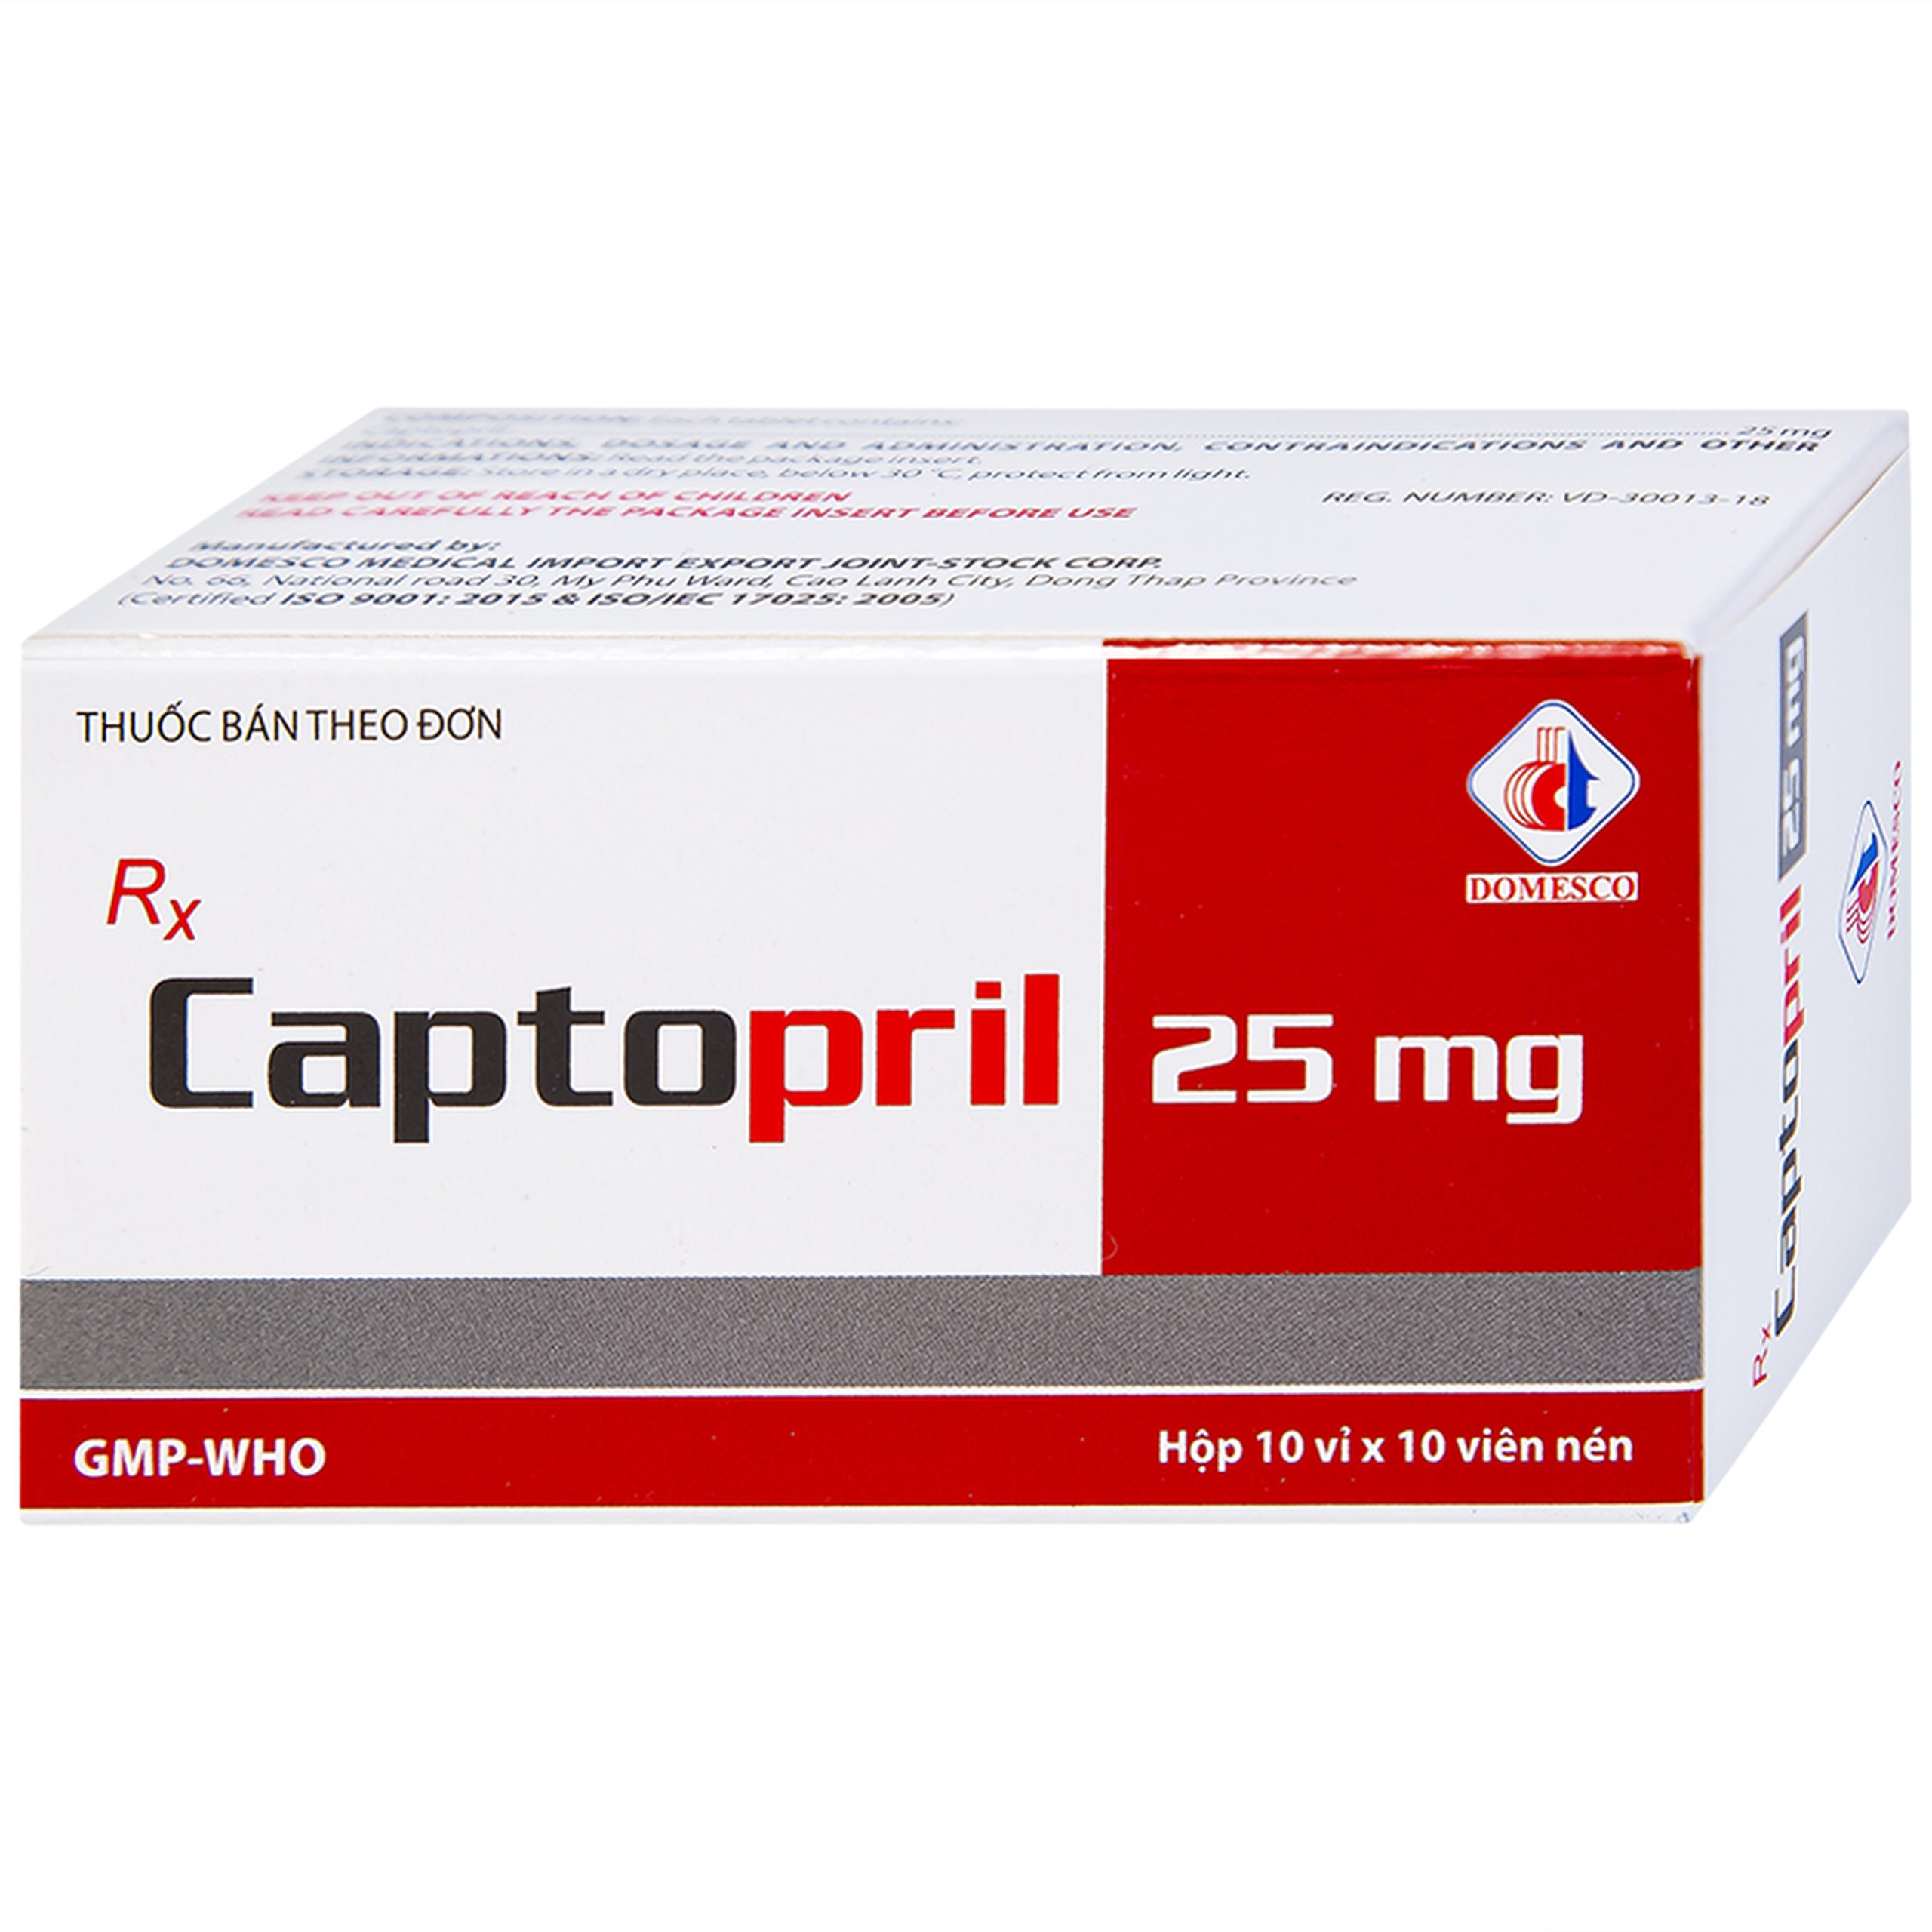 Thuốc Captopril 25mg Domesco điều trị tăng huyết áp, suy tim, nhồi máu cơ tim (10 vỉ x 10 viên) 